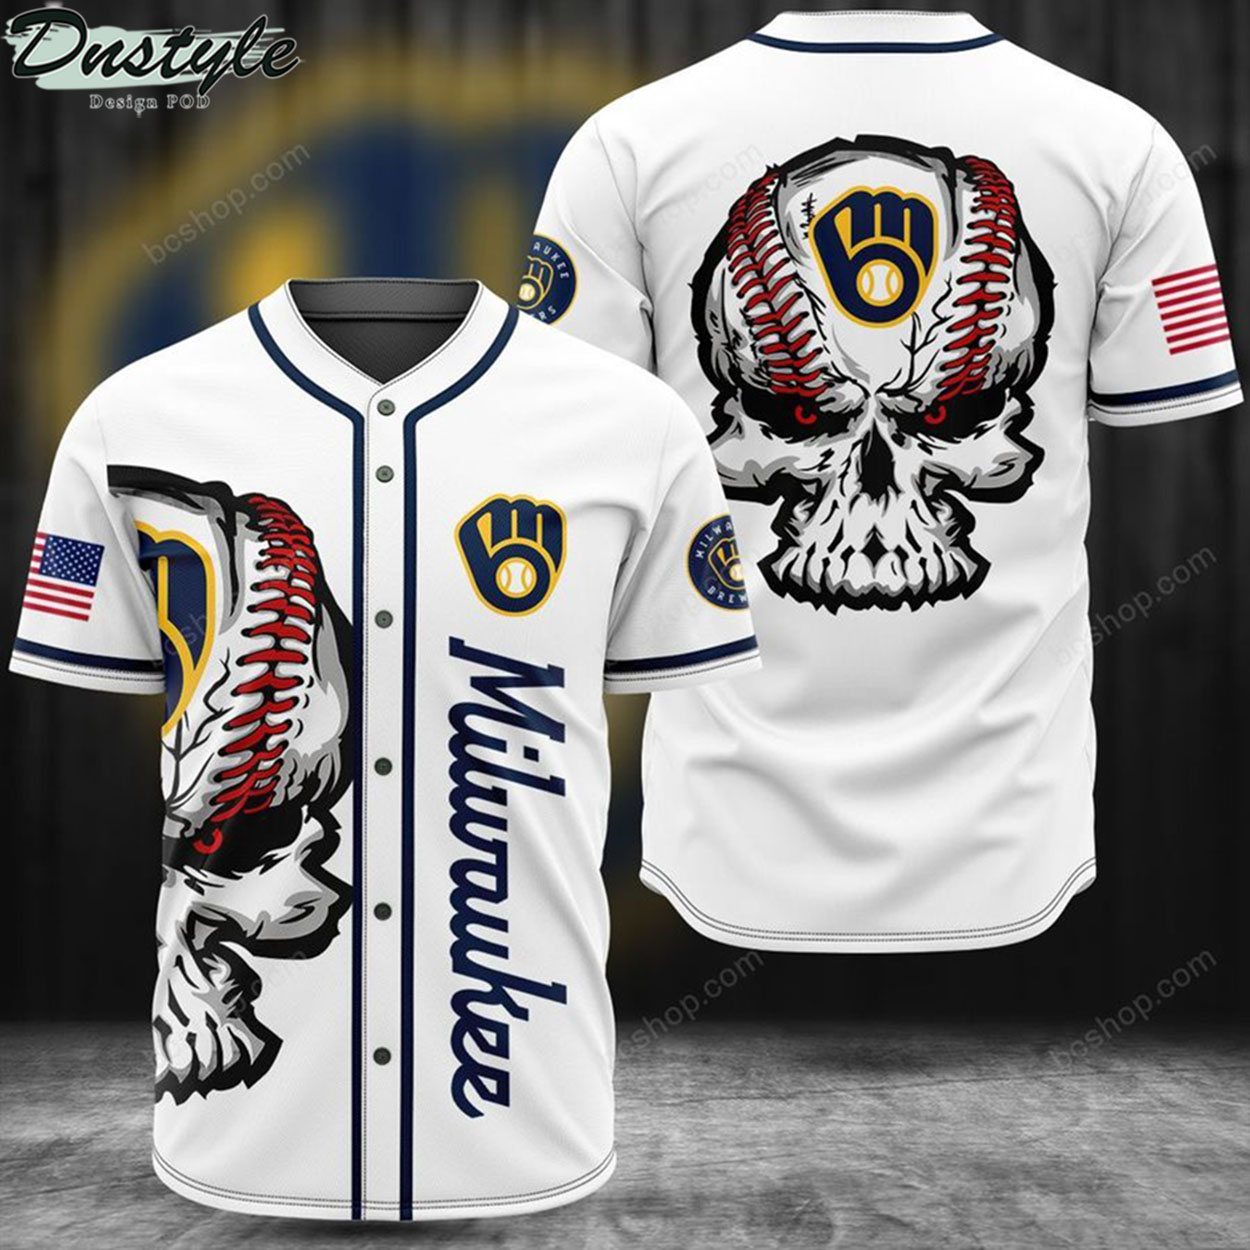 Milwaukee skull baseball jersey